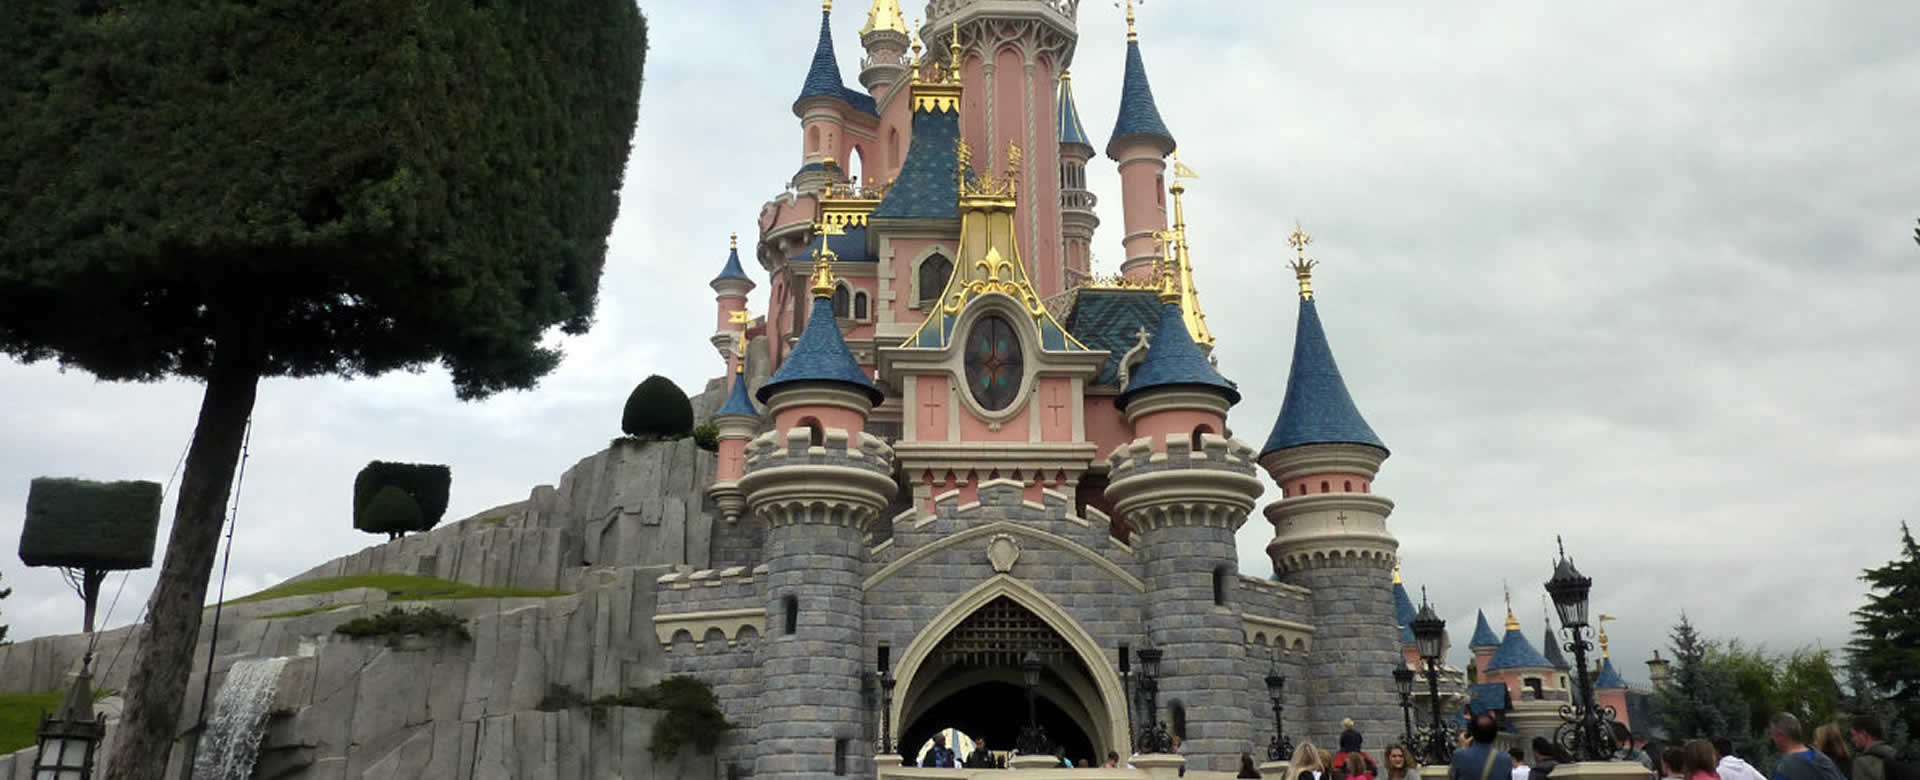 Falso atentado desata pánico en los visitantes de Disneyland en Paris